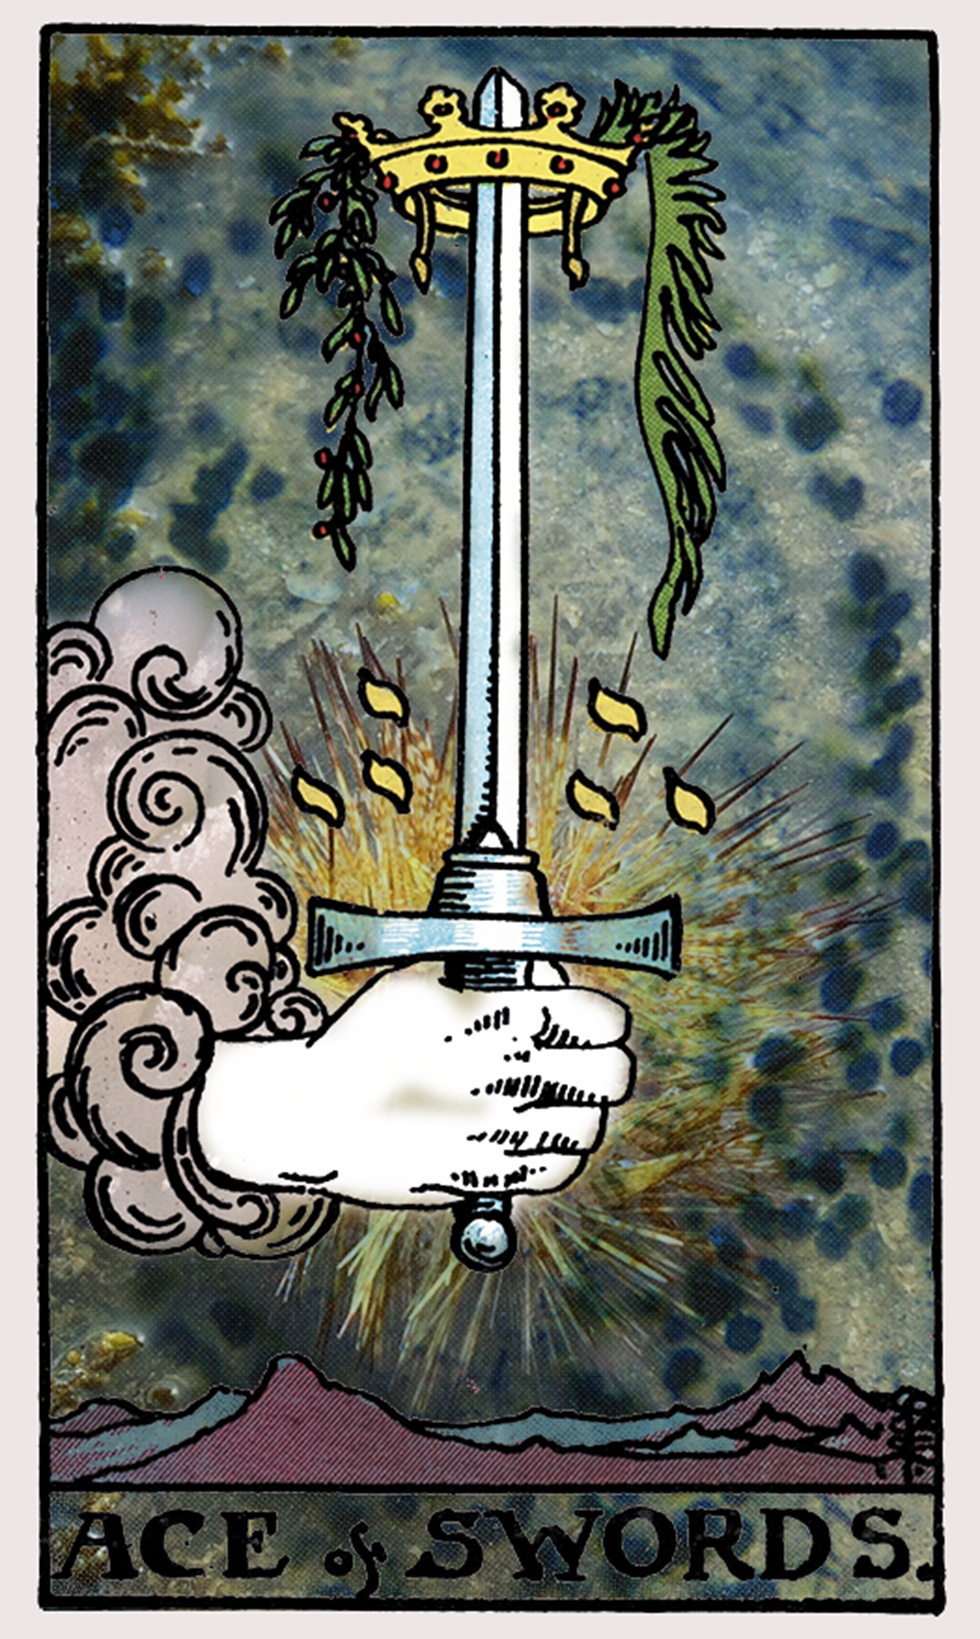 ace of swords tarot card